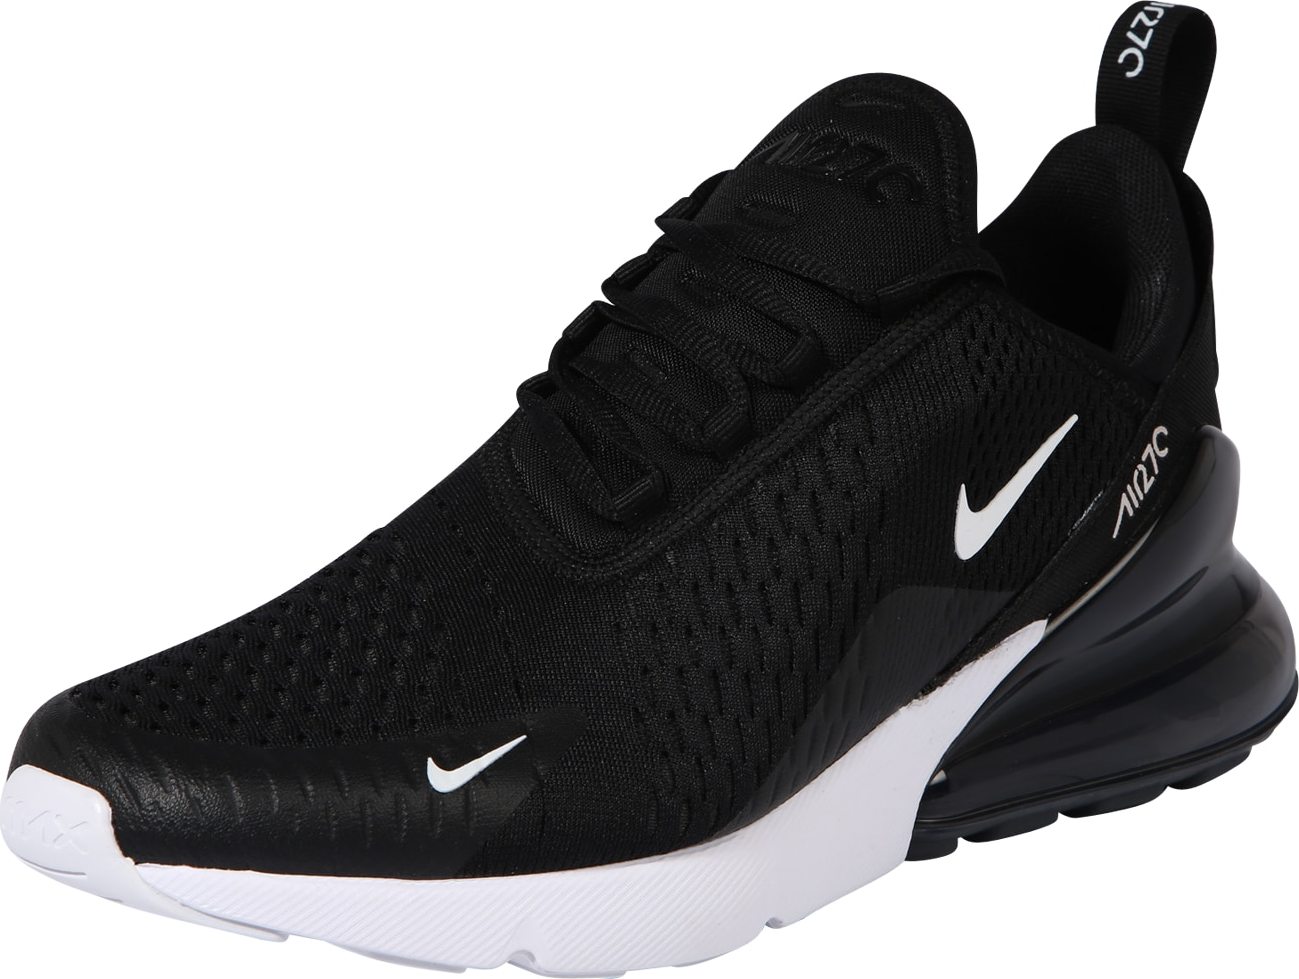 Nike Sportswear Tenisky 'Air Max 270' bílá / černá